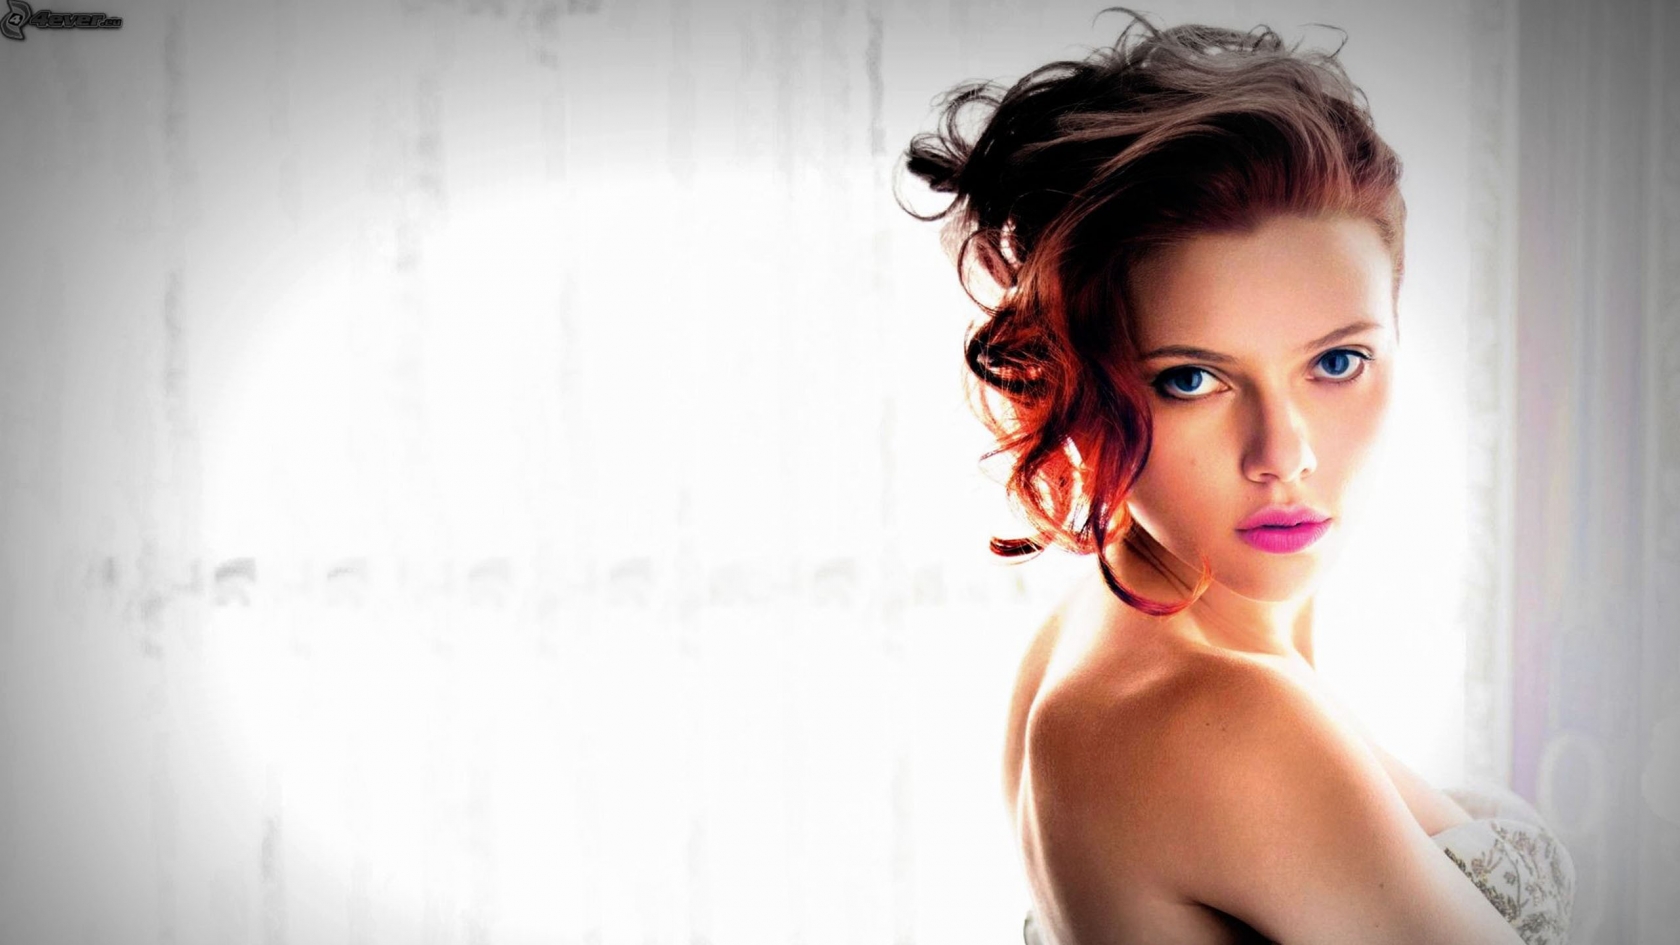 Scarlett Johansson Blue Eyes for 1680 x 945 HDTV resolution